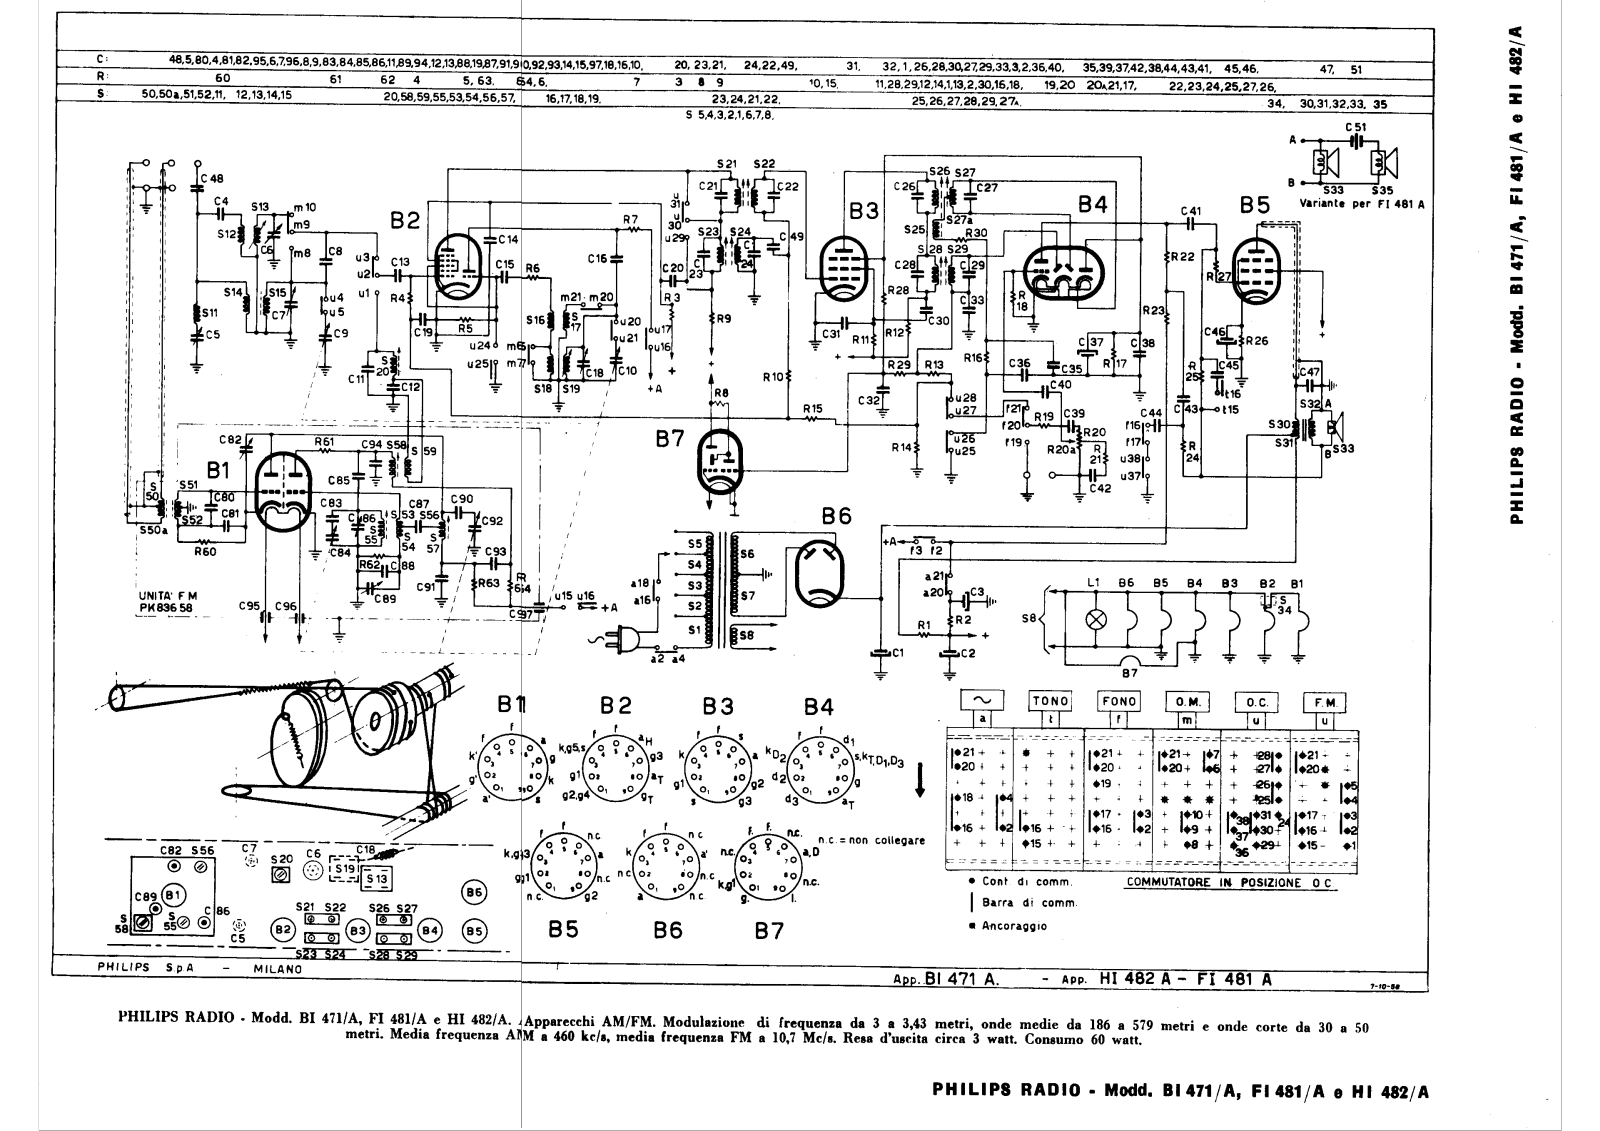 Philips bi471a, fi481a, hi482a schematic